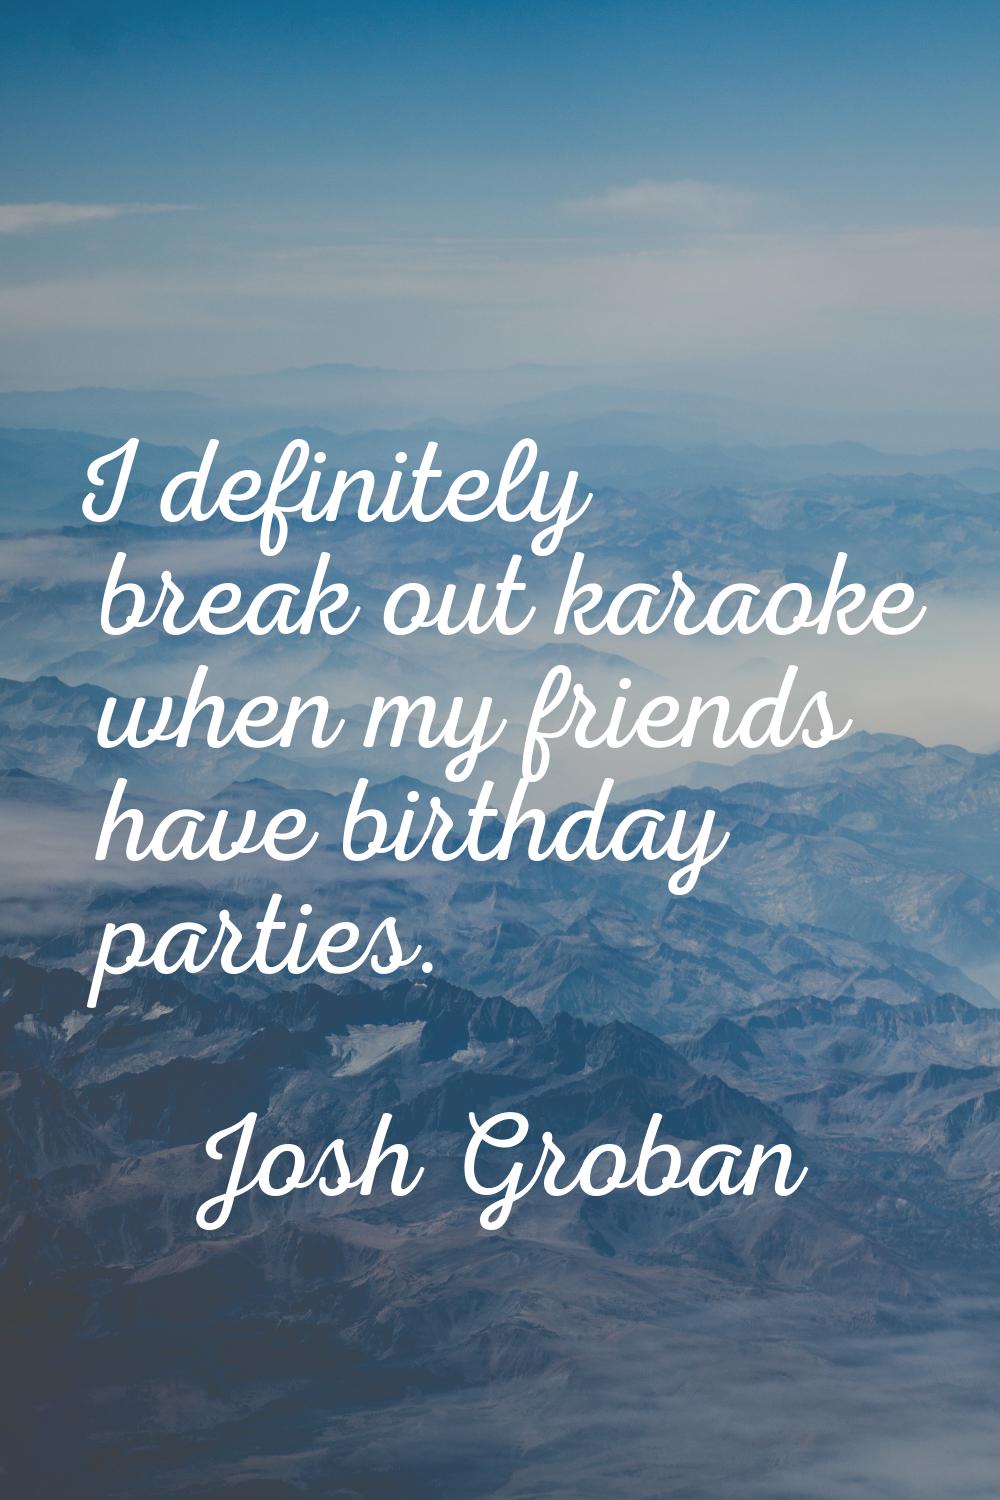 I definitely break out karaoke when my friends have birthday parties.